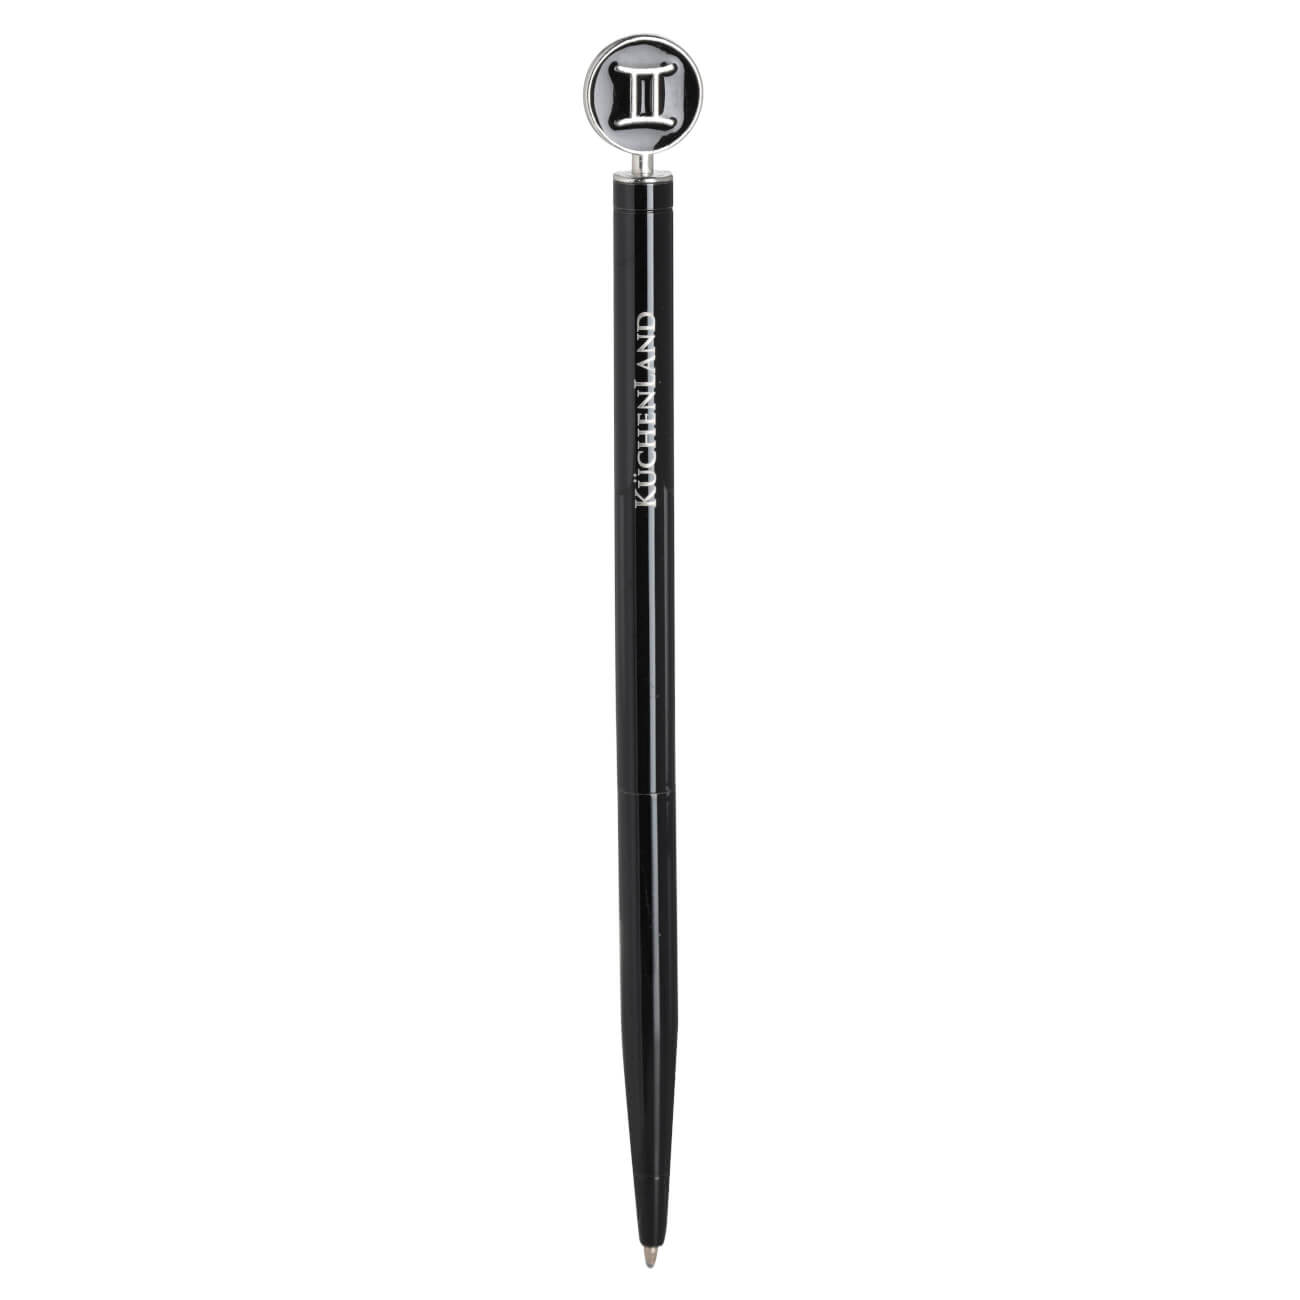 Ручка шариковая, 15 см, с фигуркой, сталь, черно-серебристая, Близнецы, Zodiac изображение № 1